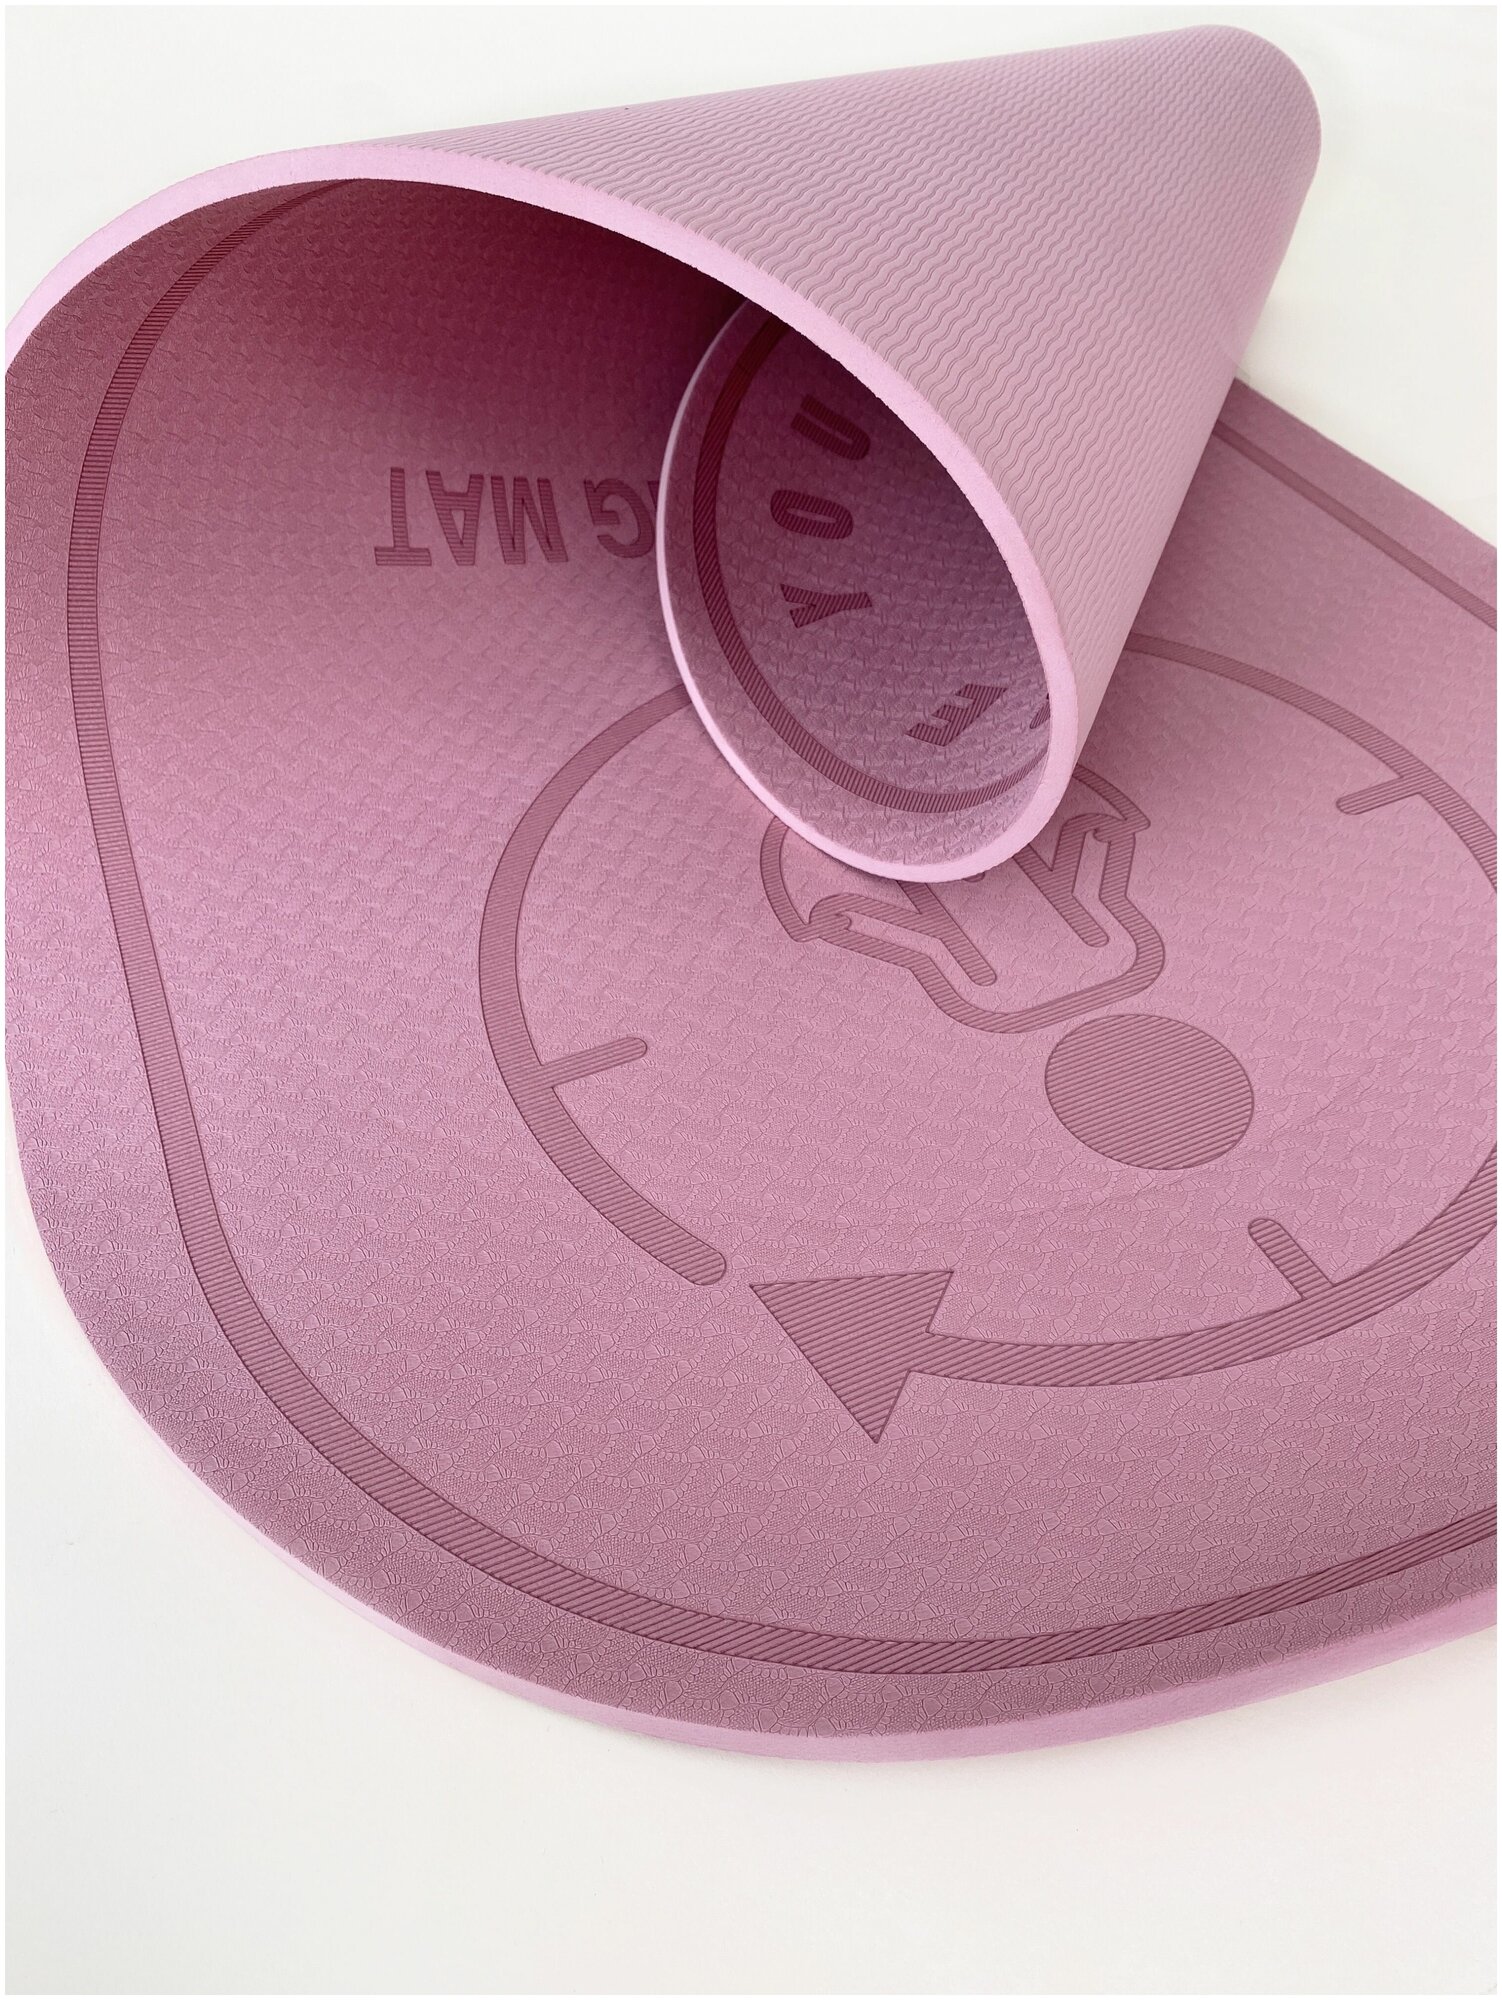 Коврик для йоги, фитнеса и прыжков на скакалке HOLOVIT, 8 мм, розовый